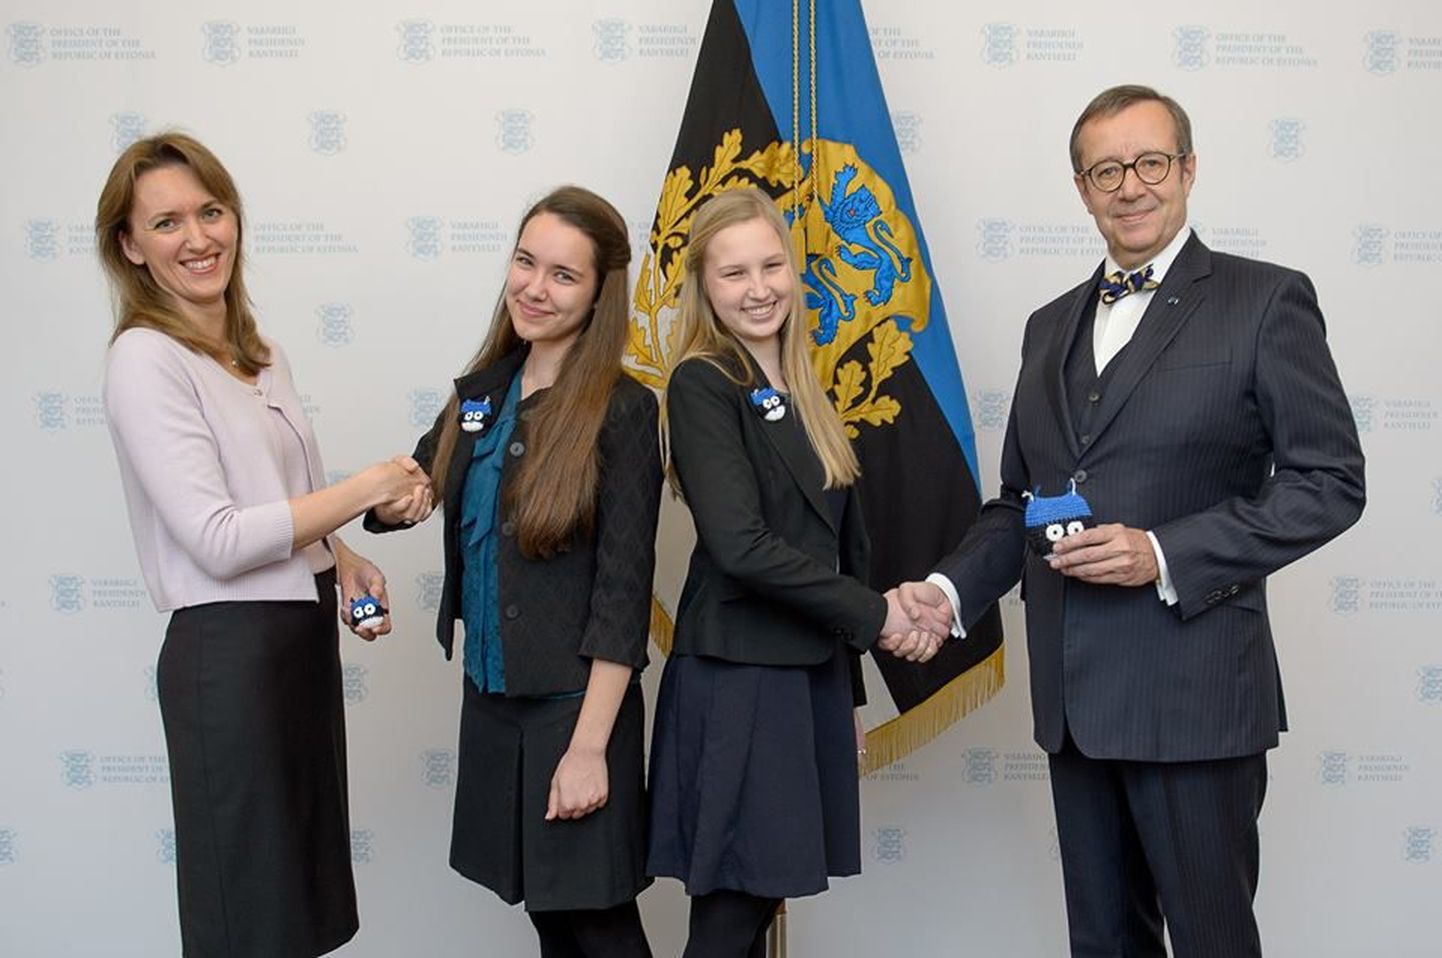 Presidendi kantseleid külastasid Miina Härma Gümnaasiumi õpilased Triin Karis ja Merili Ginter. Vasakul ieva Ilves, paemal Toomas Hendrik Ilves